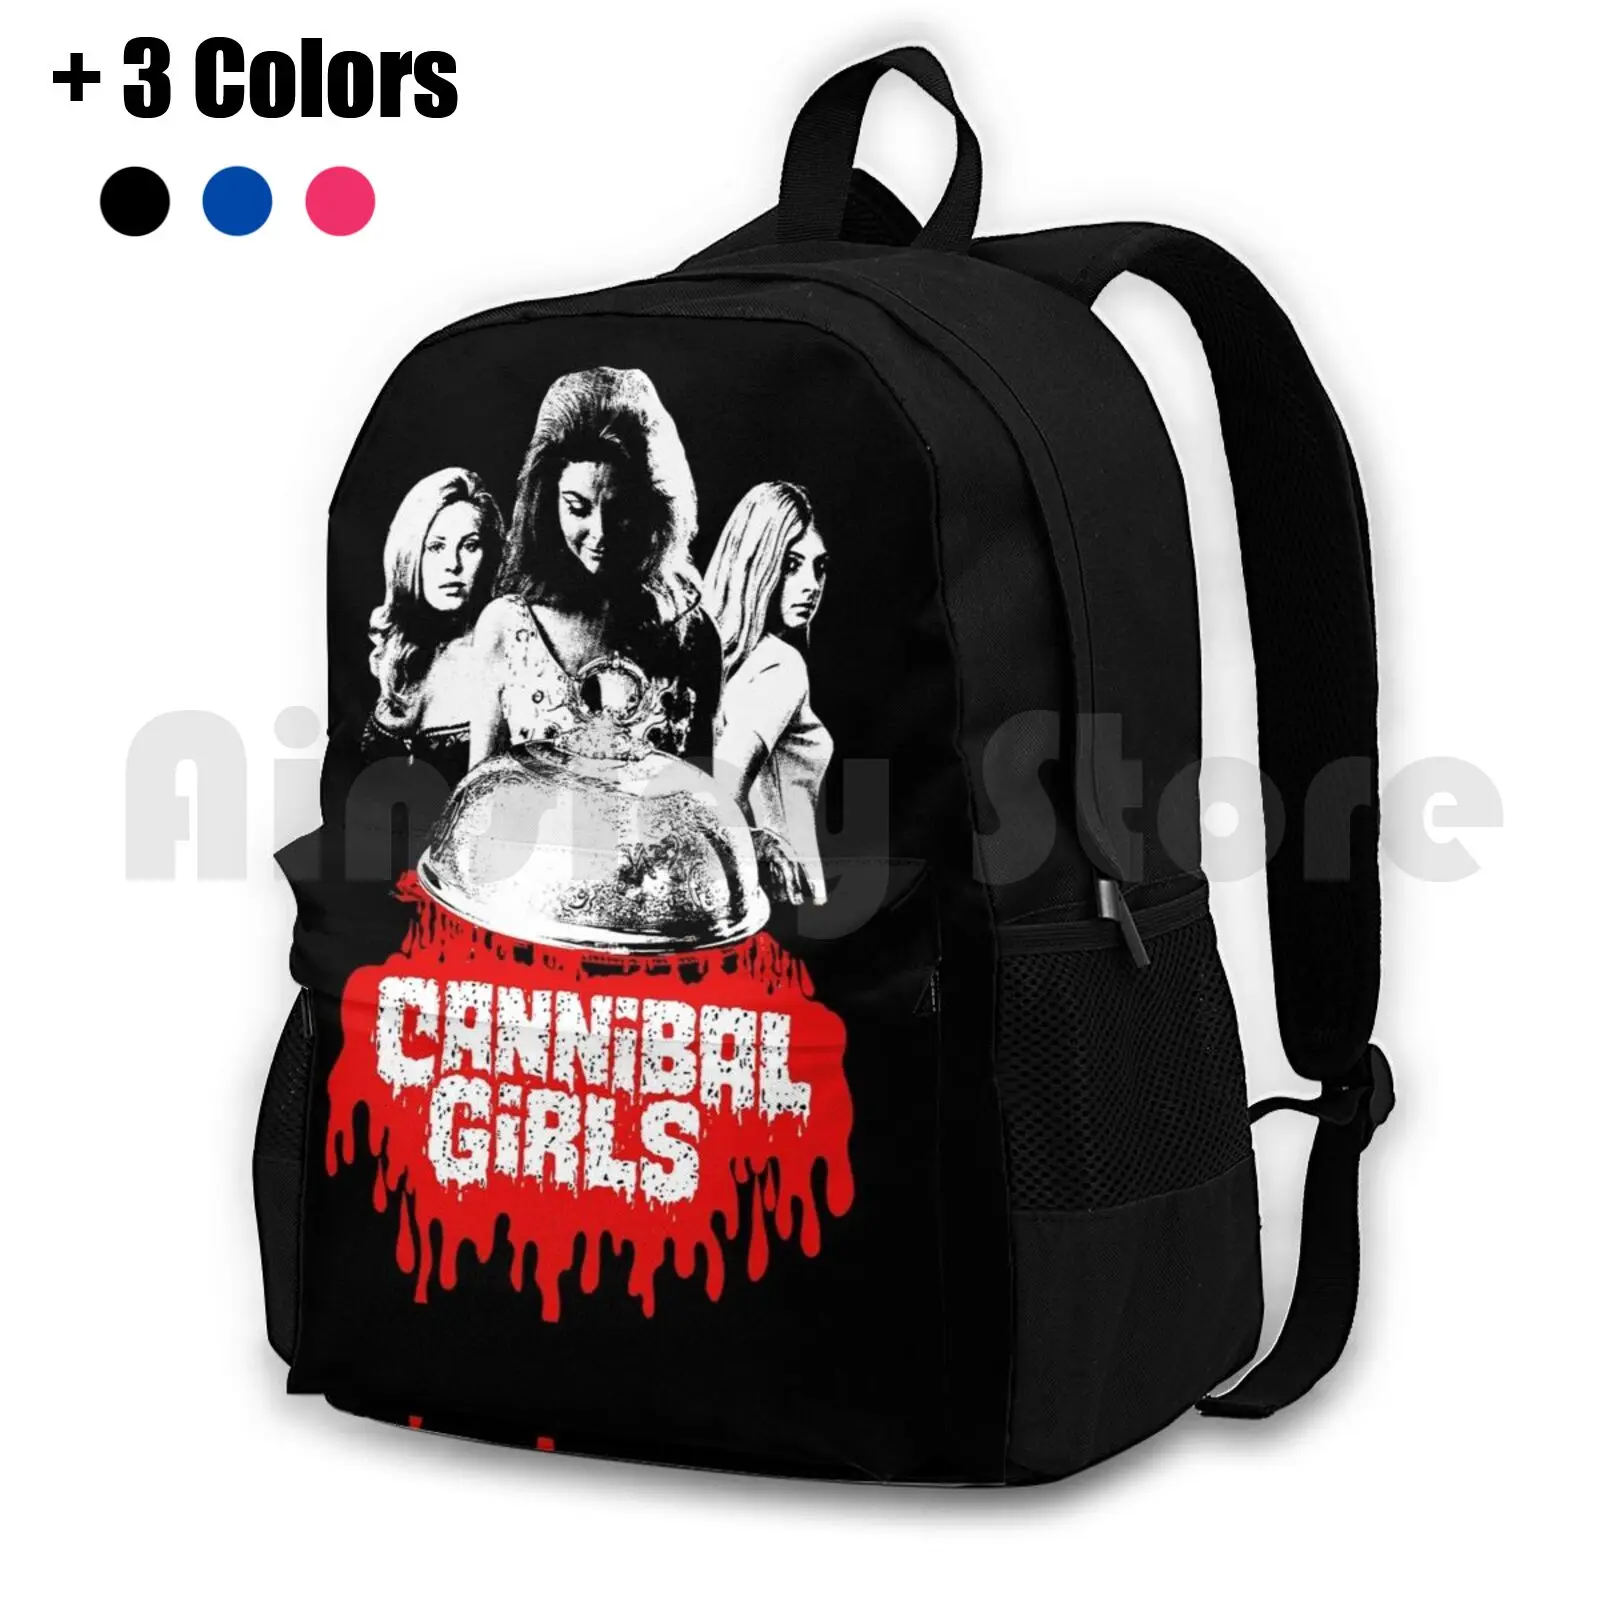 

Женский рюкзак Cannibal для активного отдыха и походов, спортивная сумка для верховой езды, альпинизма, винтажные ужасные фильмы с ужасами для девушек